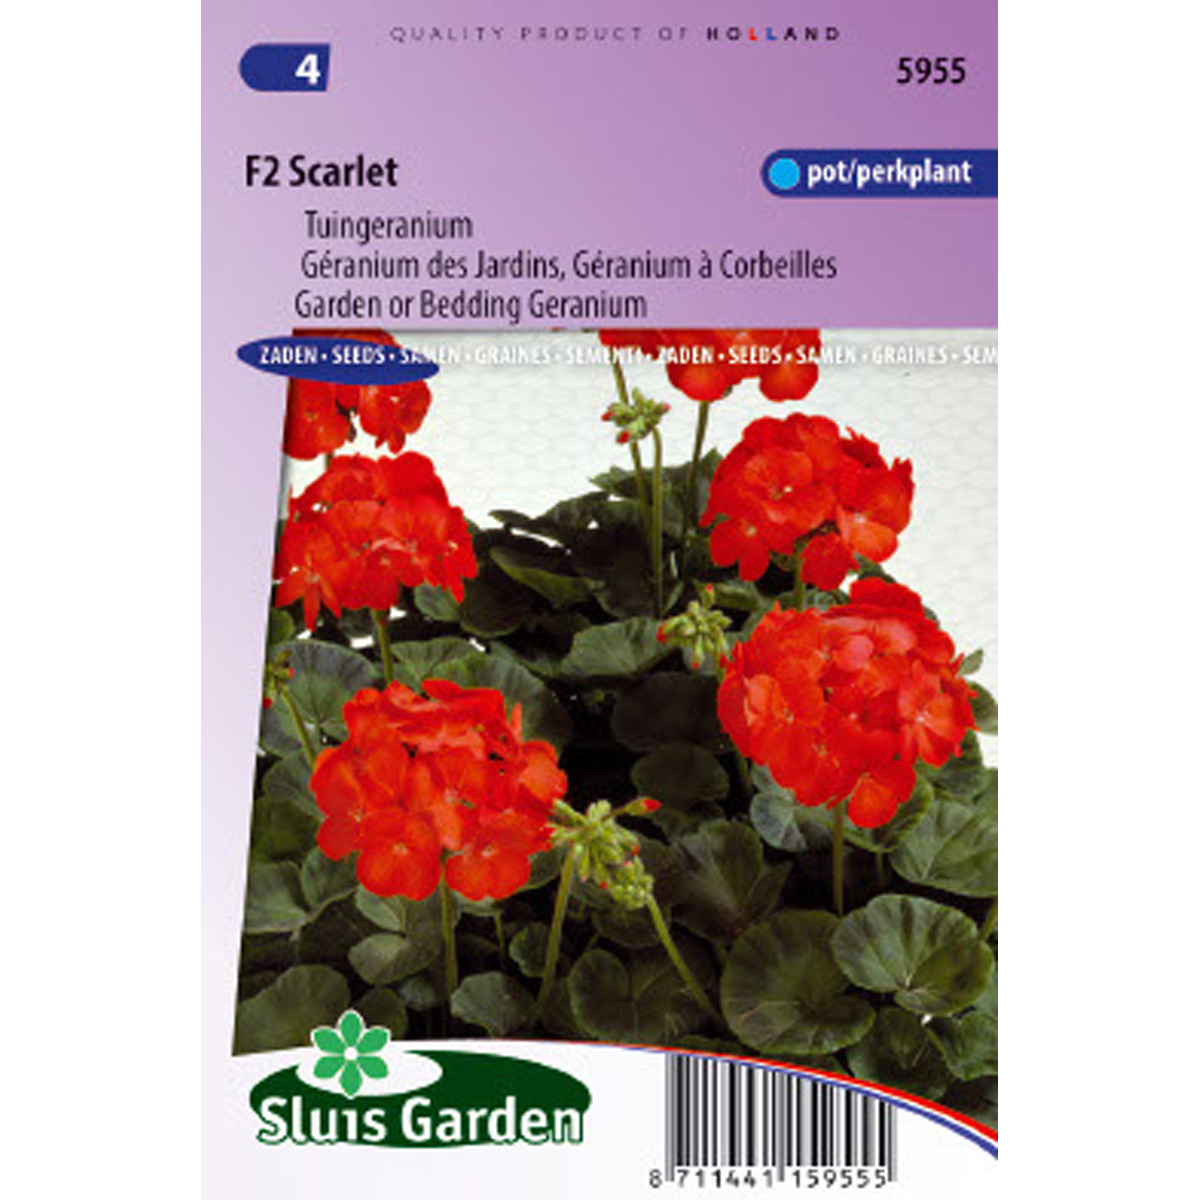 Géranium des Jardins F2 Scarlet - Pelargonium